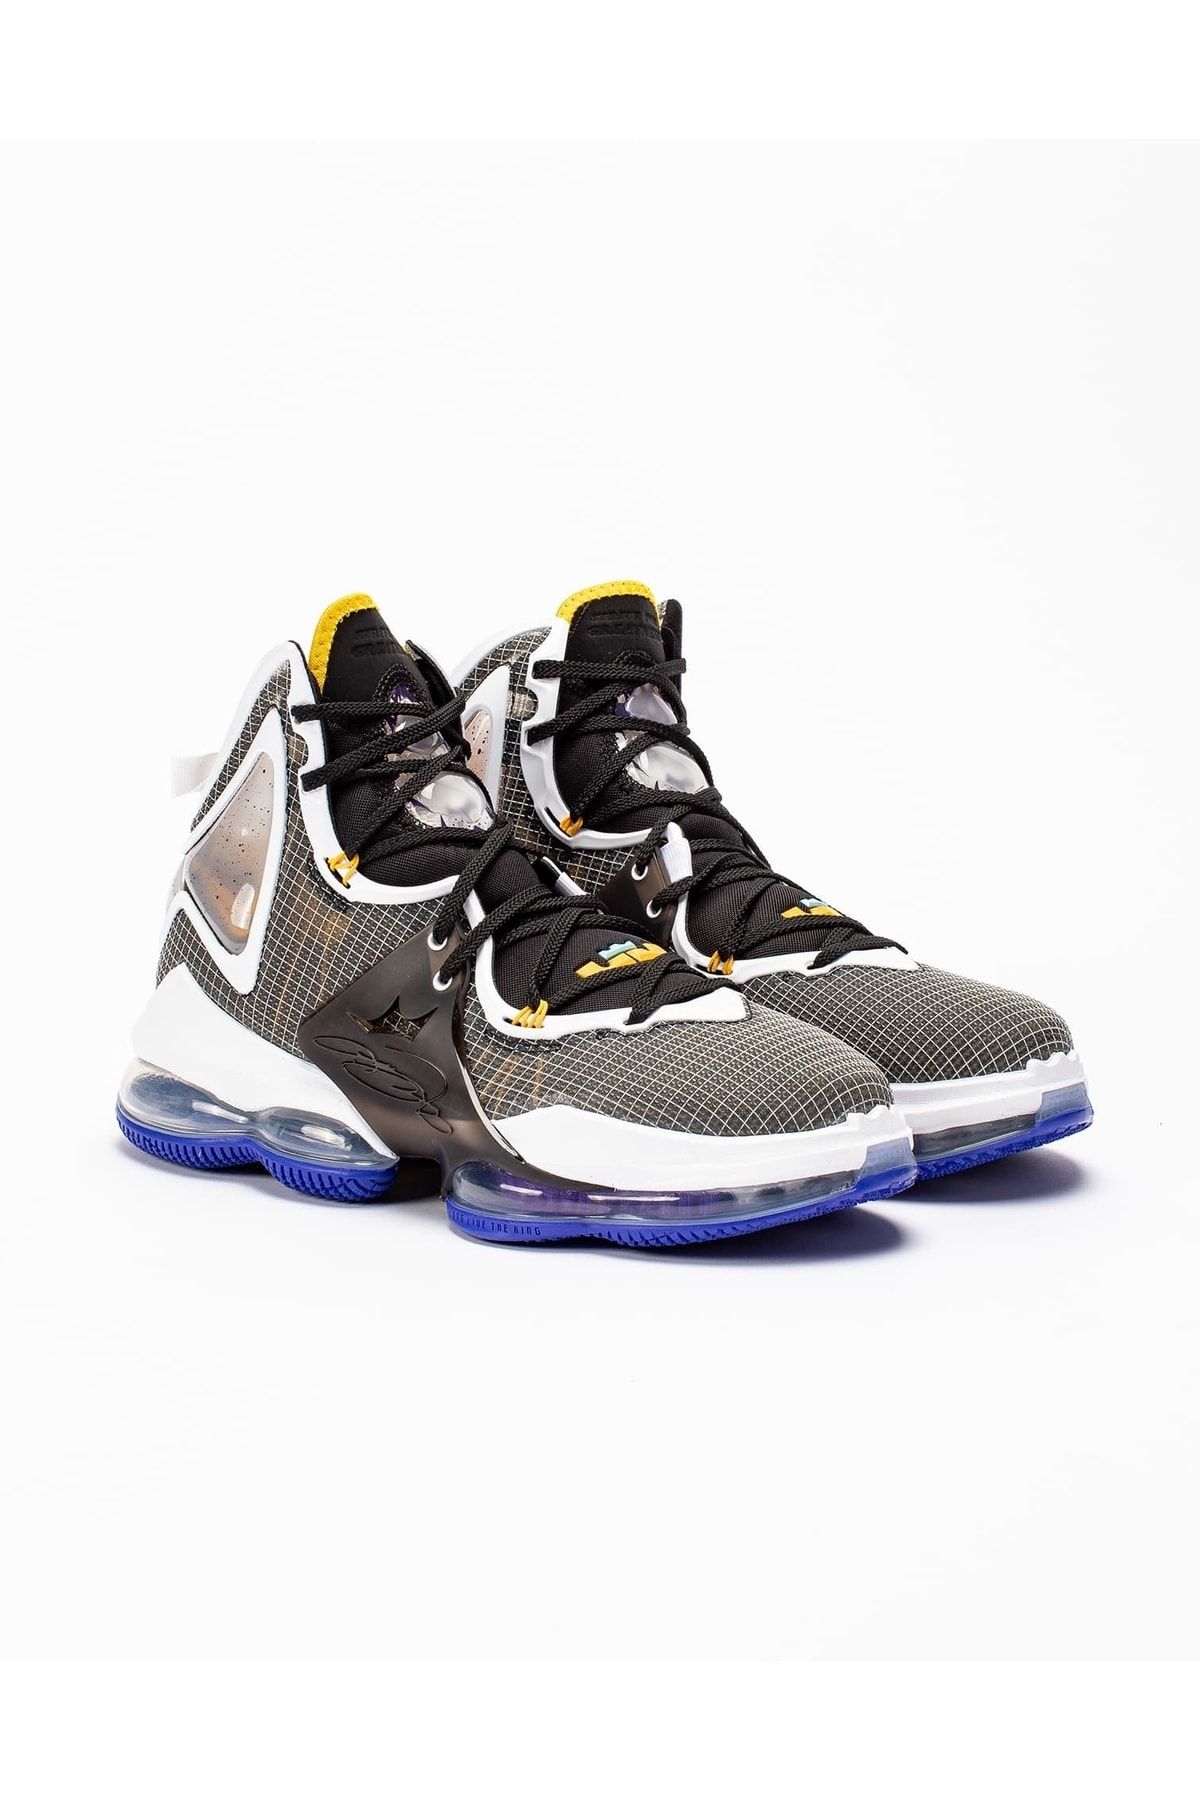 Nike Lebron 19 Basketball Ayakkabısı- Black - Cz0203-002